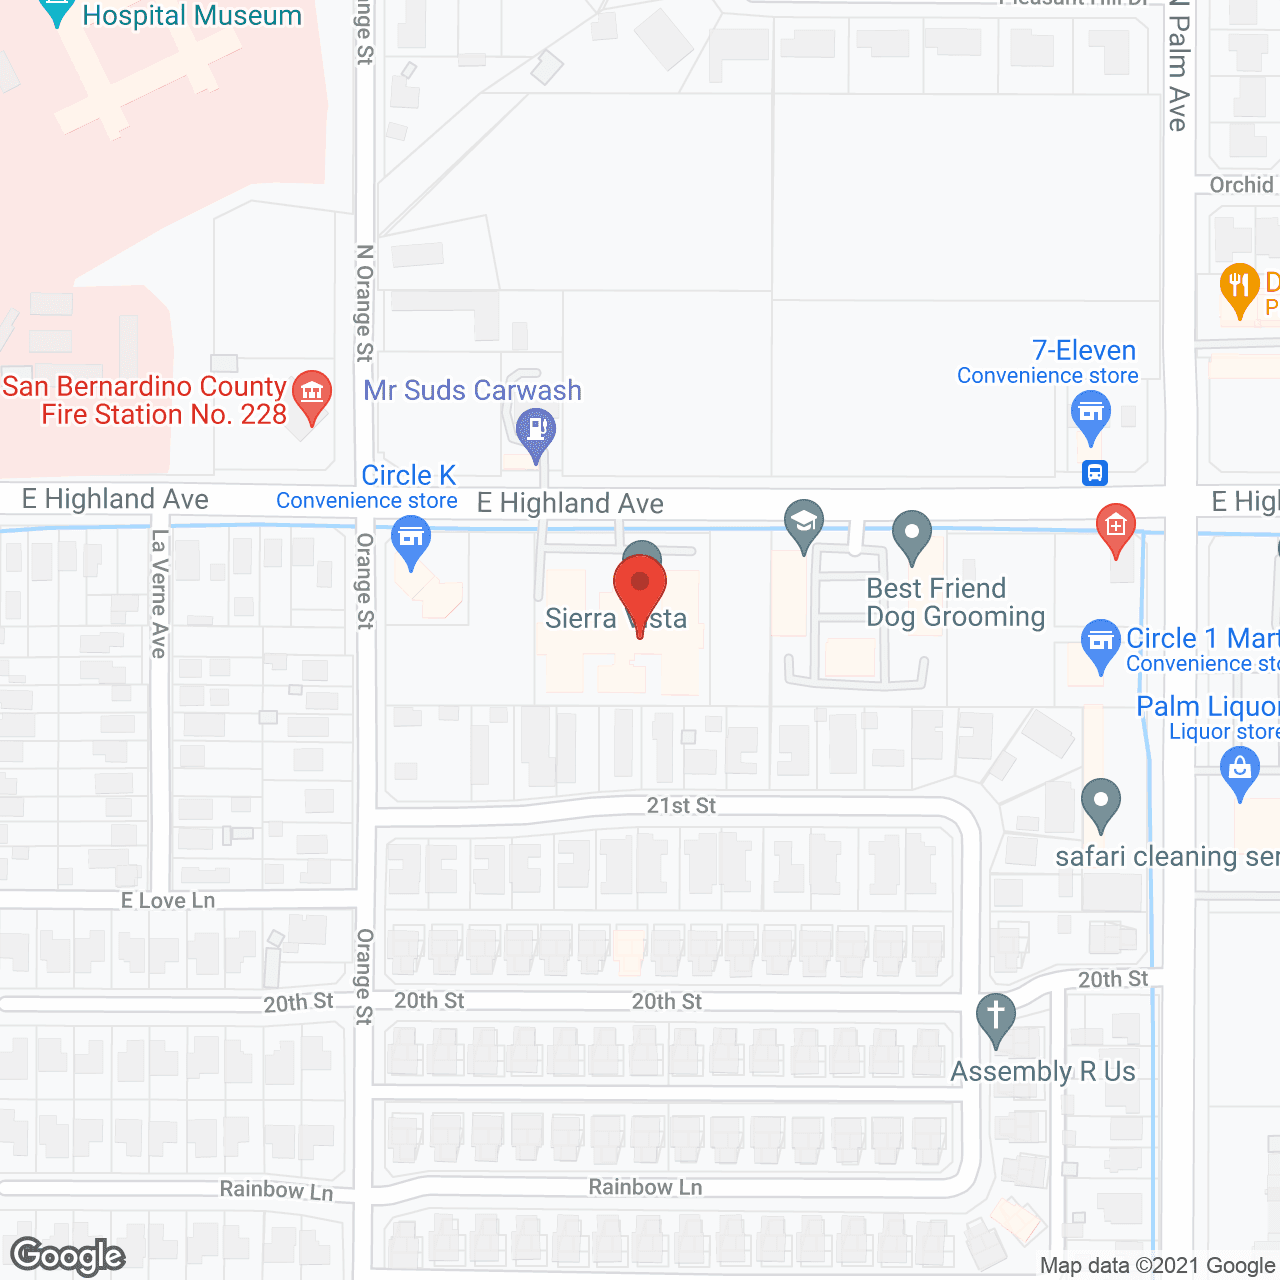 Sierra Vista in google map